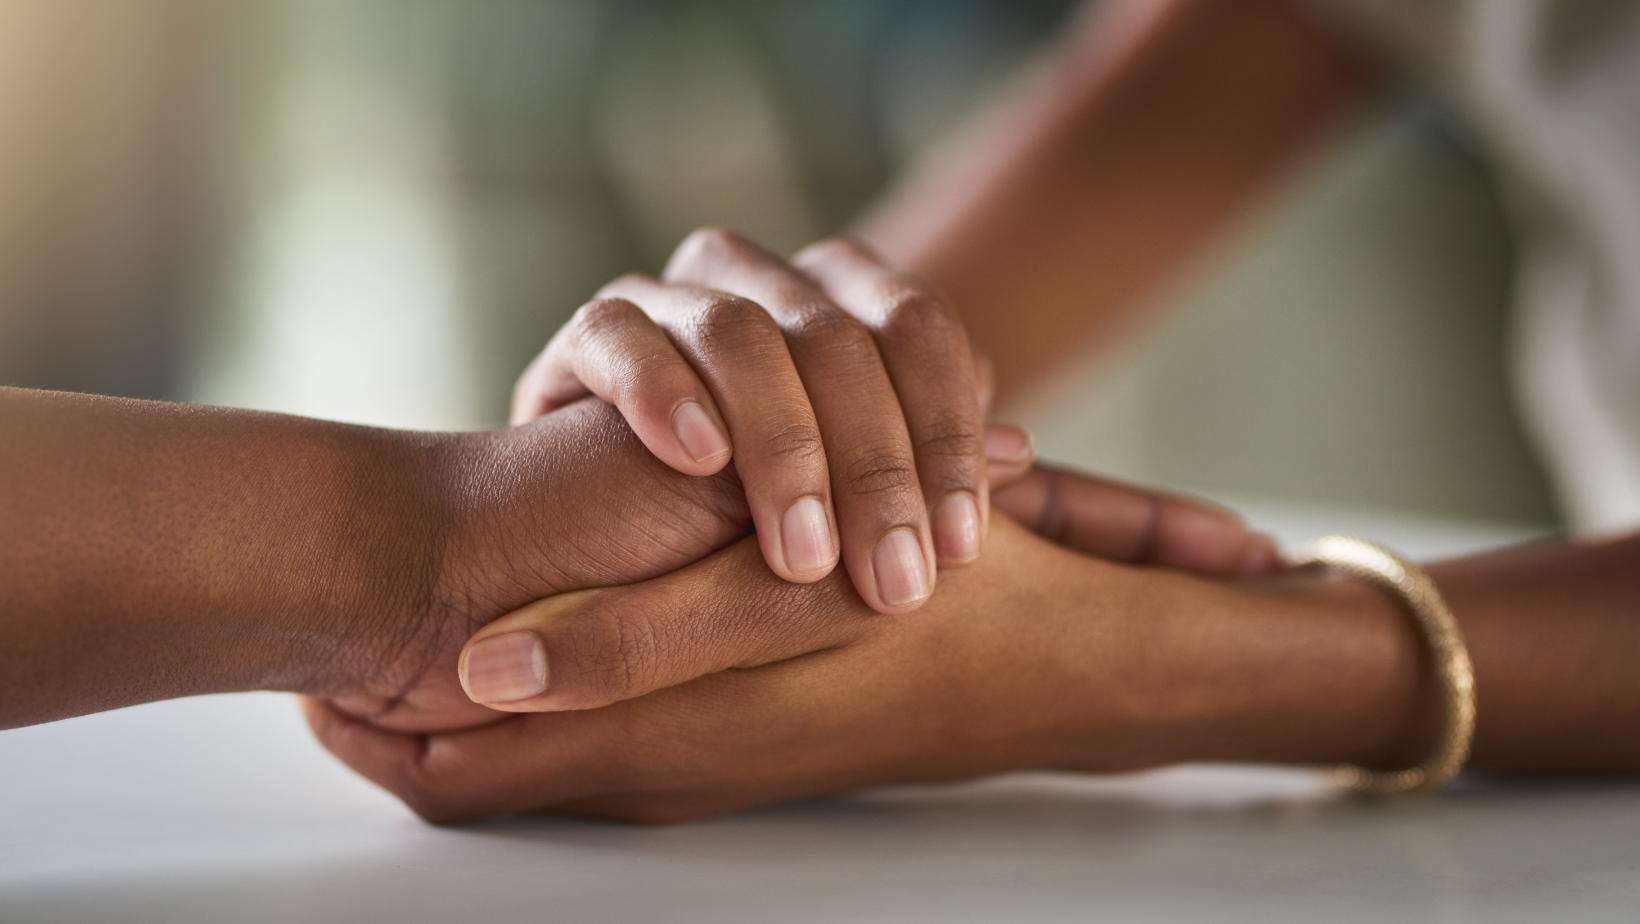 Zdjęcie przedstawia dłonie czarnoskórych ludzi. Dwie dłonie jednej osoby przytrzymują dłoń drugiej osoby. 